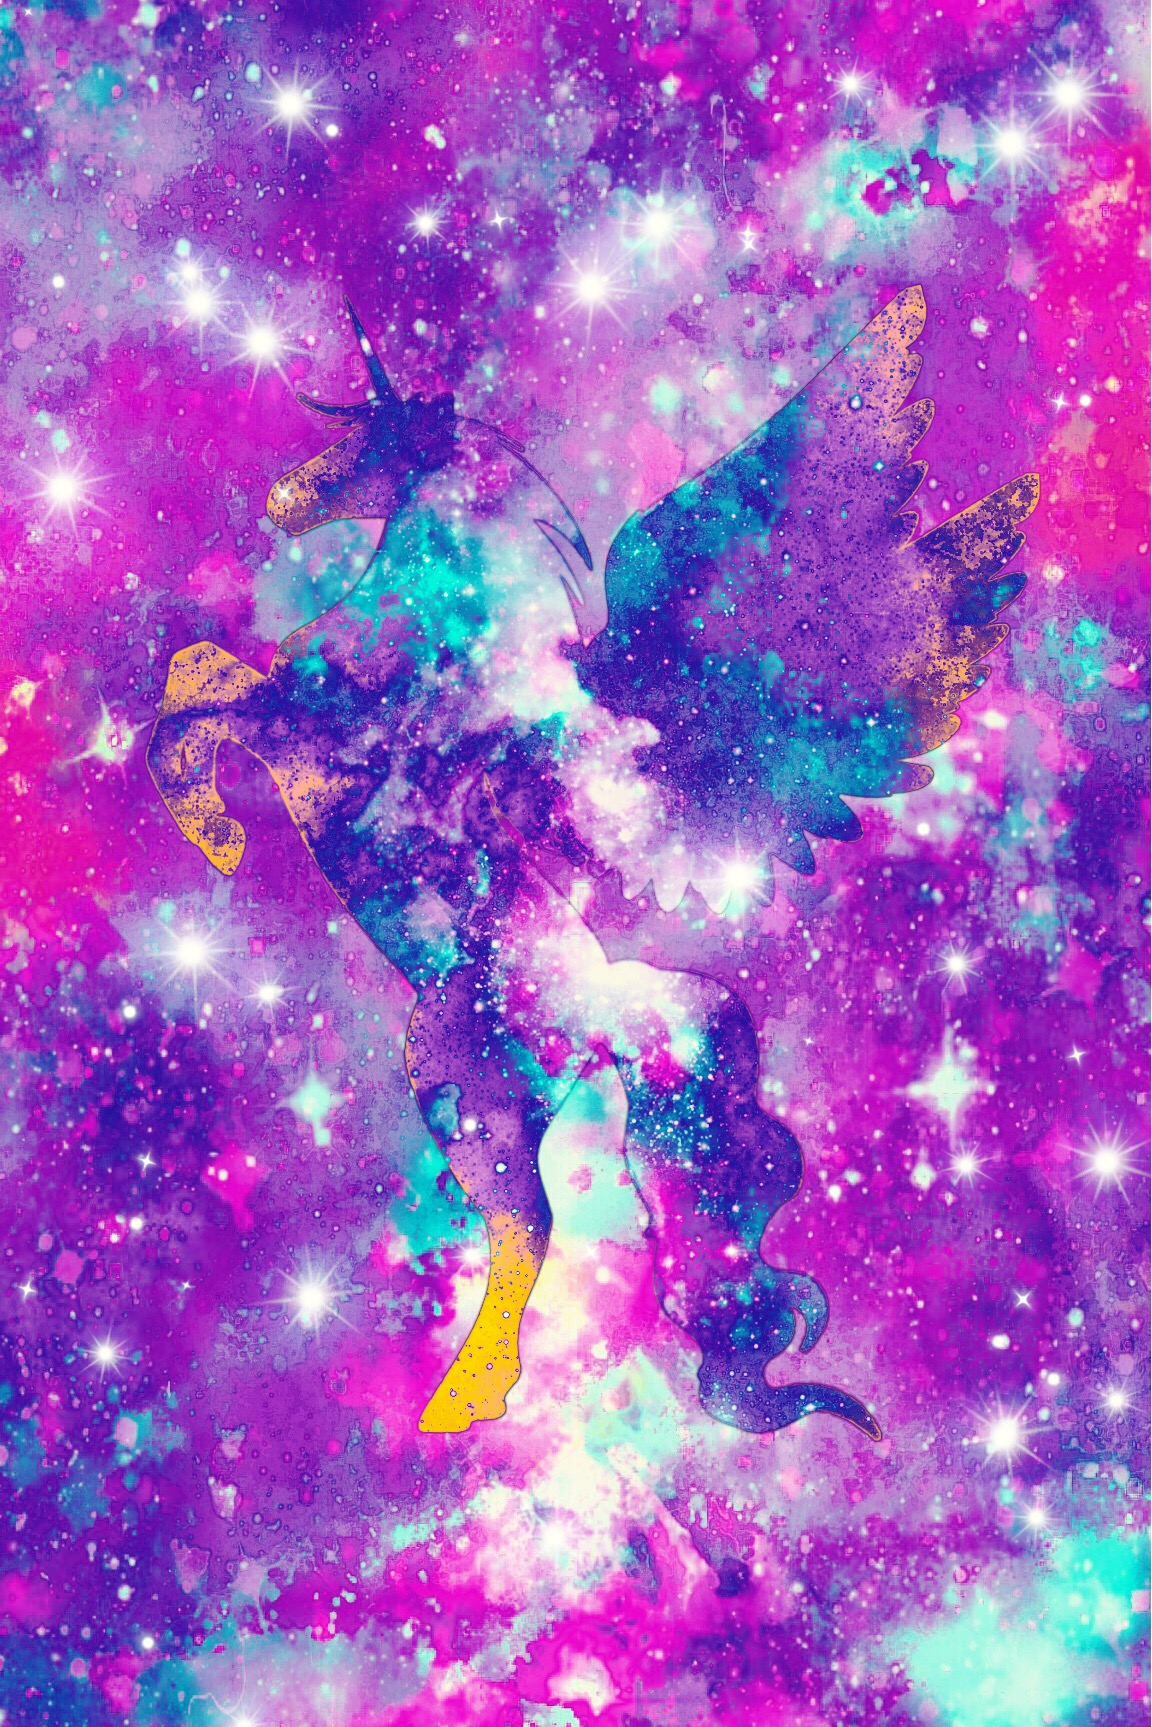 freetoedit glitter galaxy unicorn stars image by @misspink88.